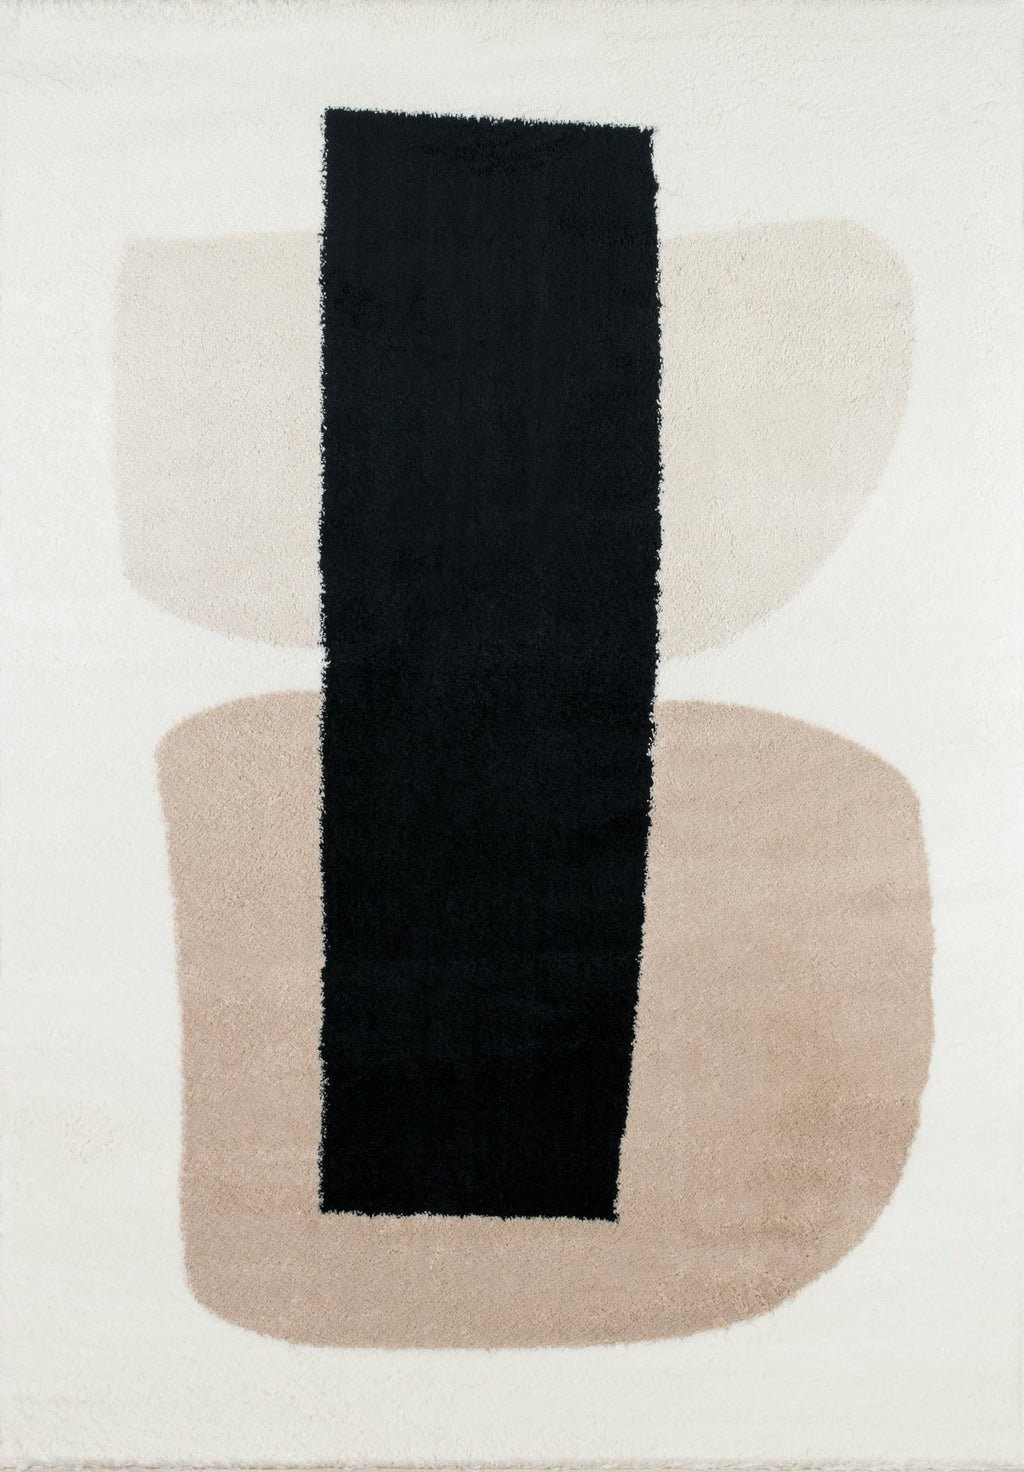 Tapis salon moderne avec motif graphique beige, gris et noir-160x230 KARENA